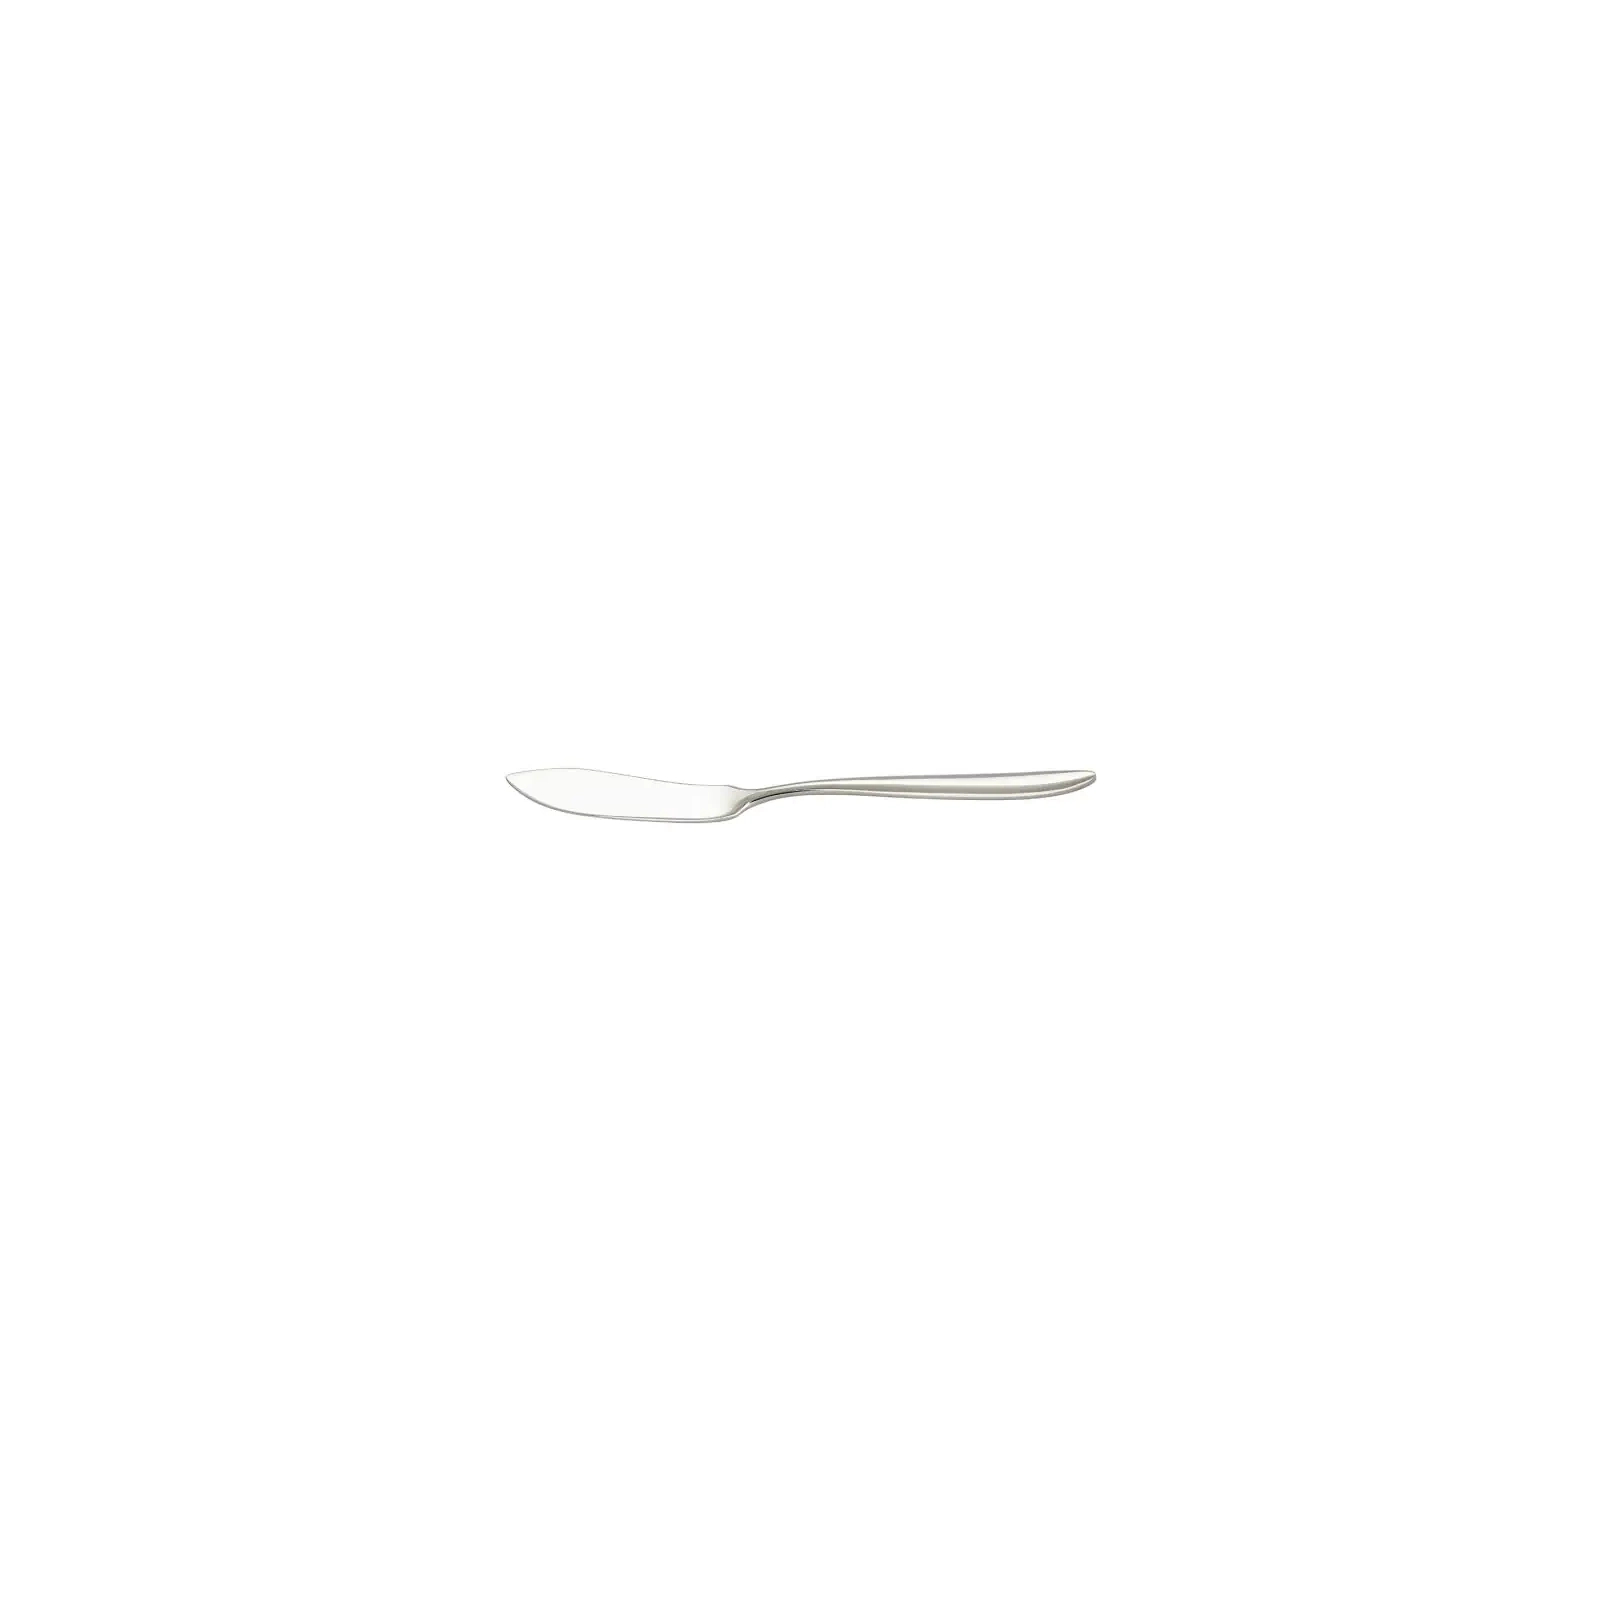 Столовый нож FoREST Impresa для риби (850510)